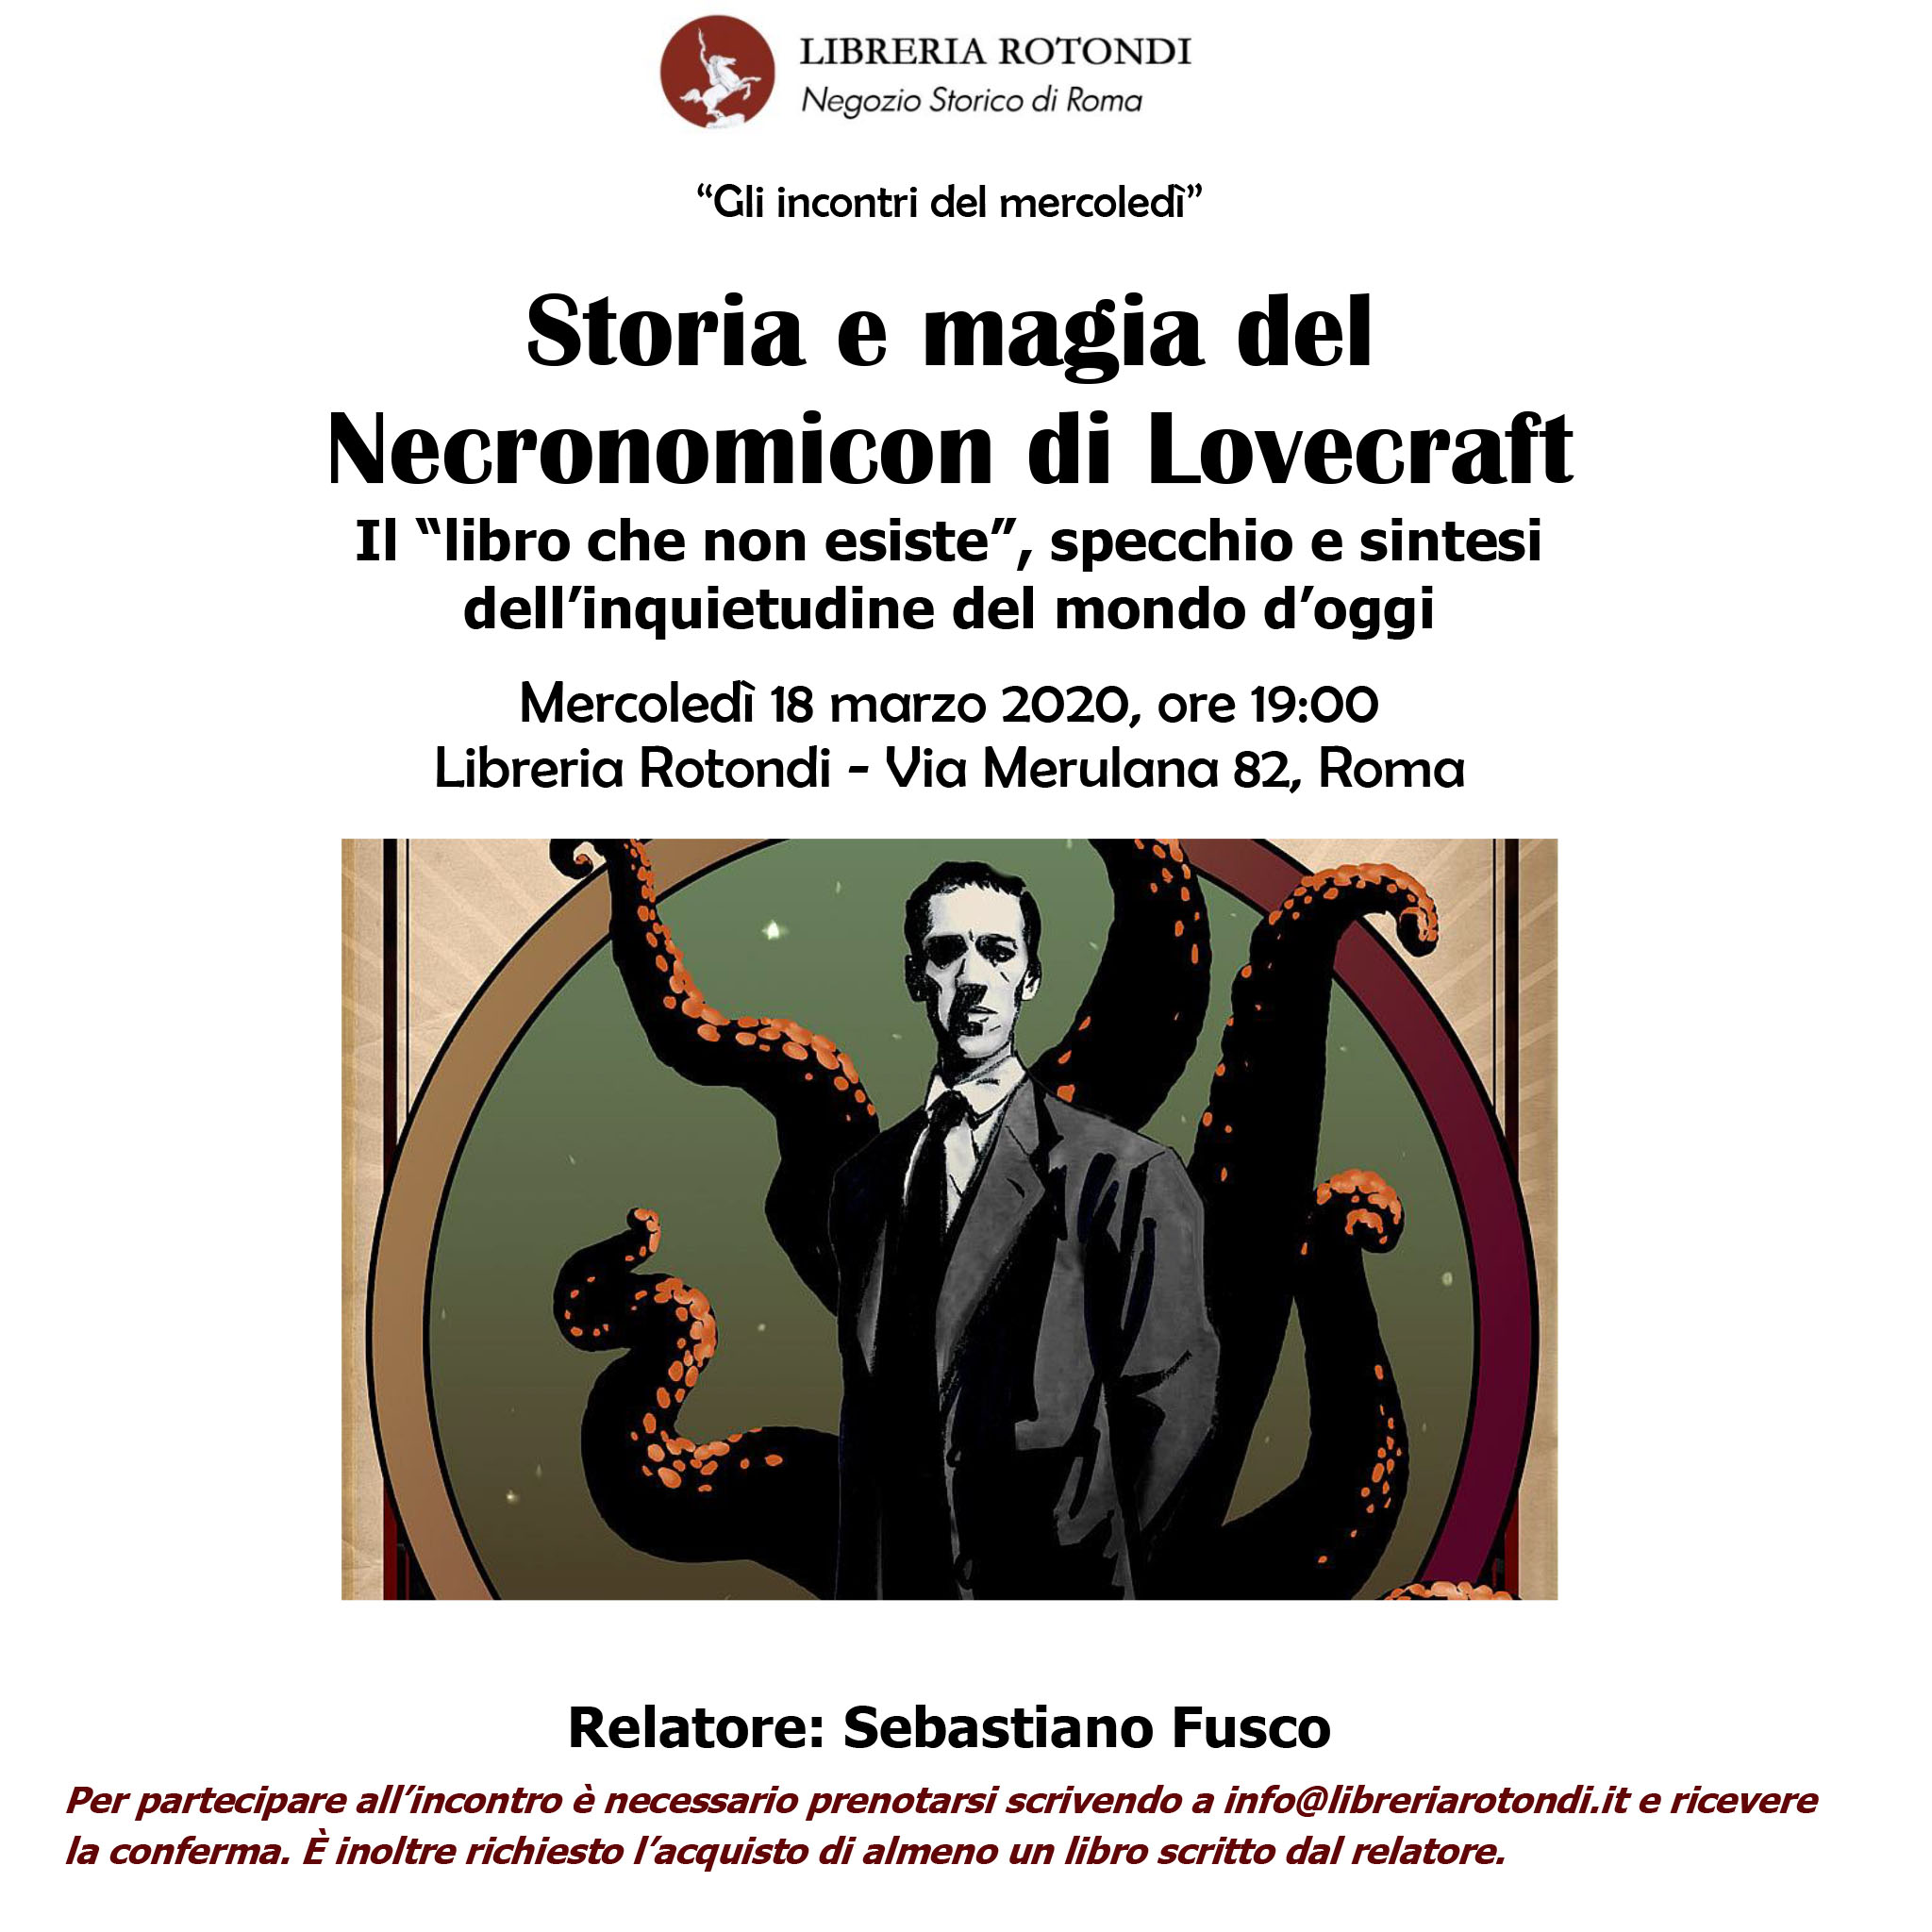 "Gli incontri del mercoledì" - Storia e magia del Necronomicon di Lovecraft. Relatore: Sebastiano Fusco